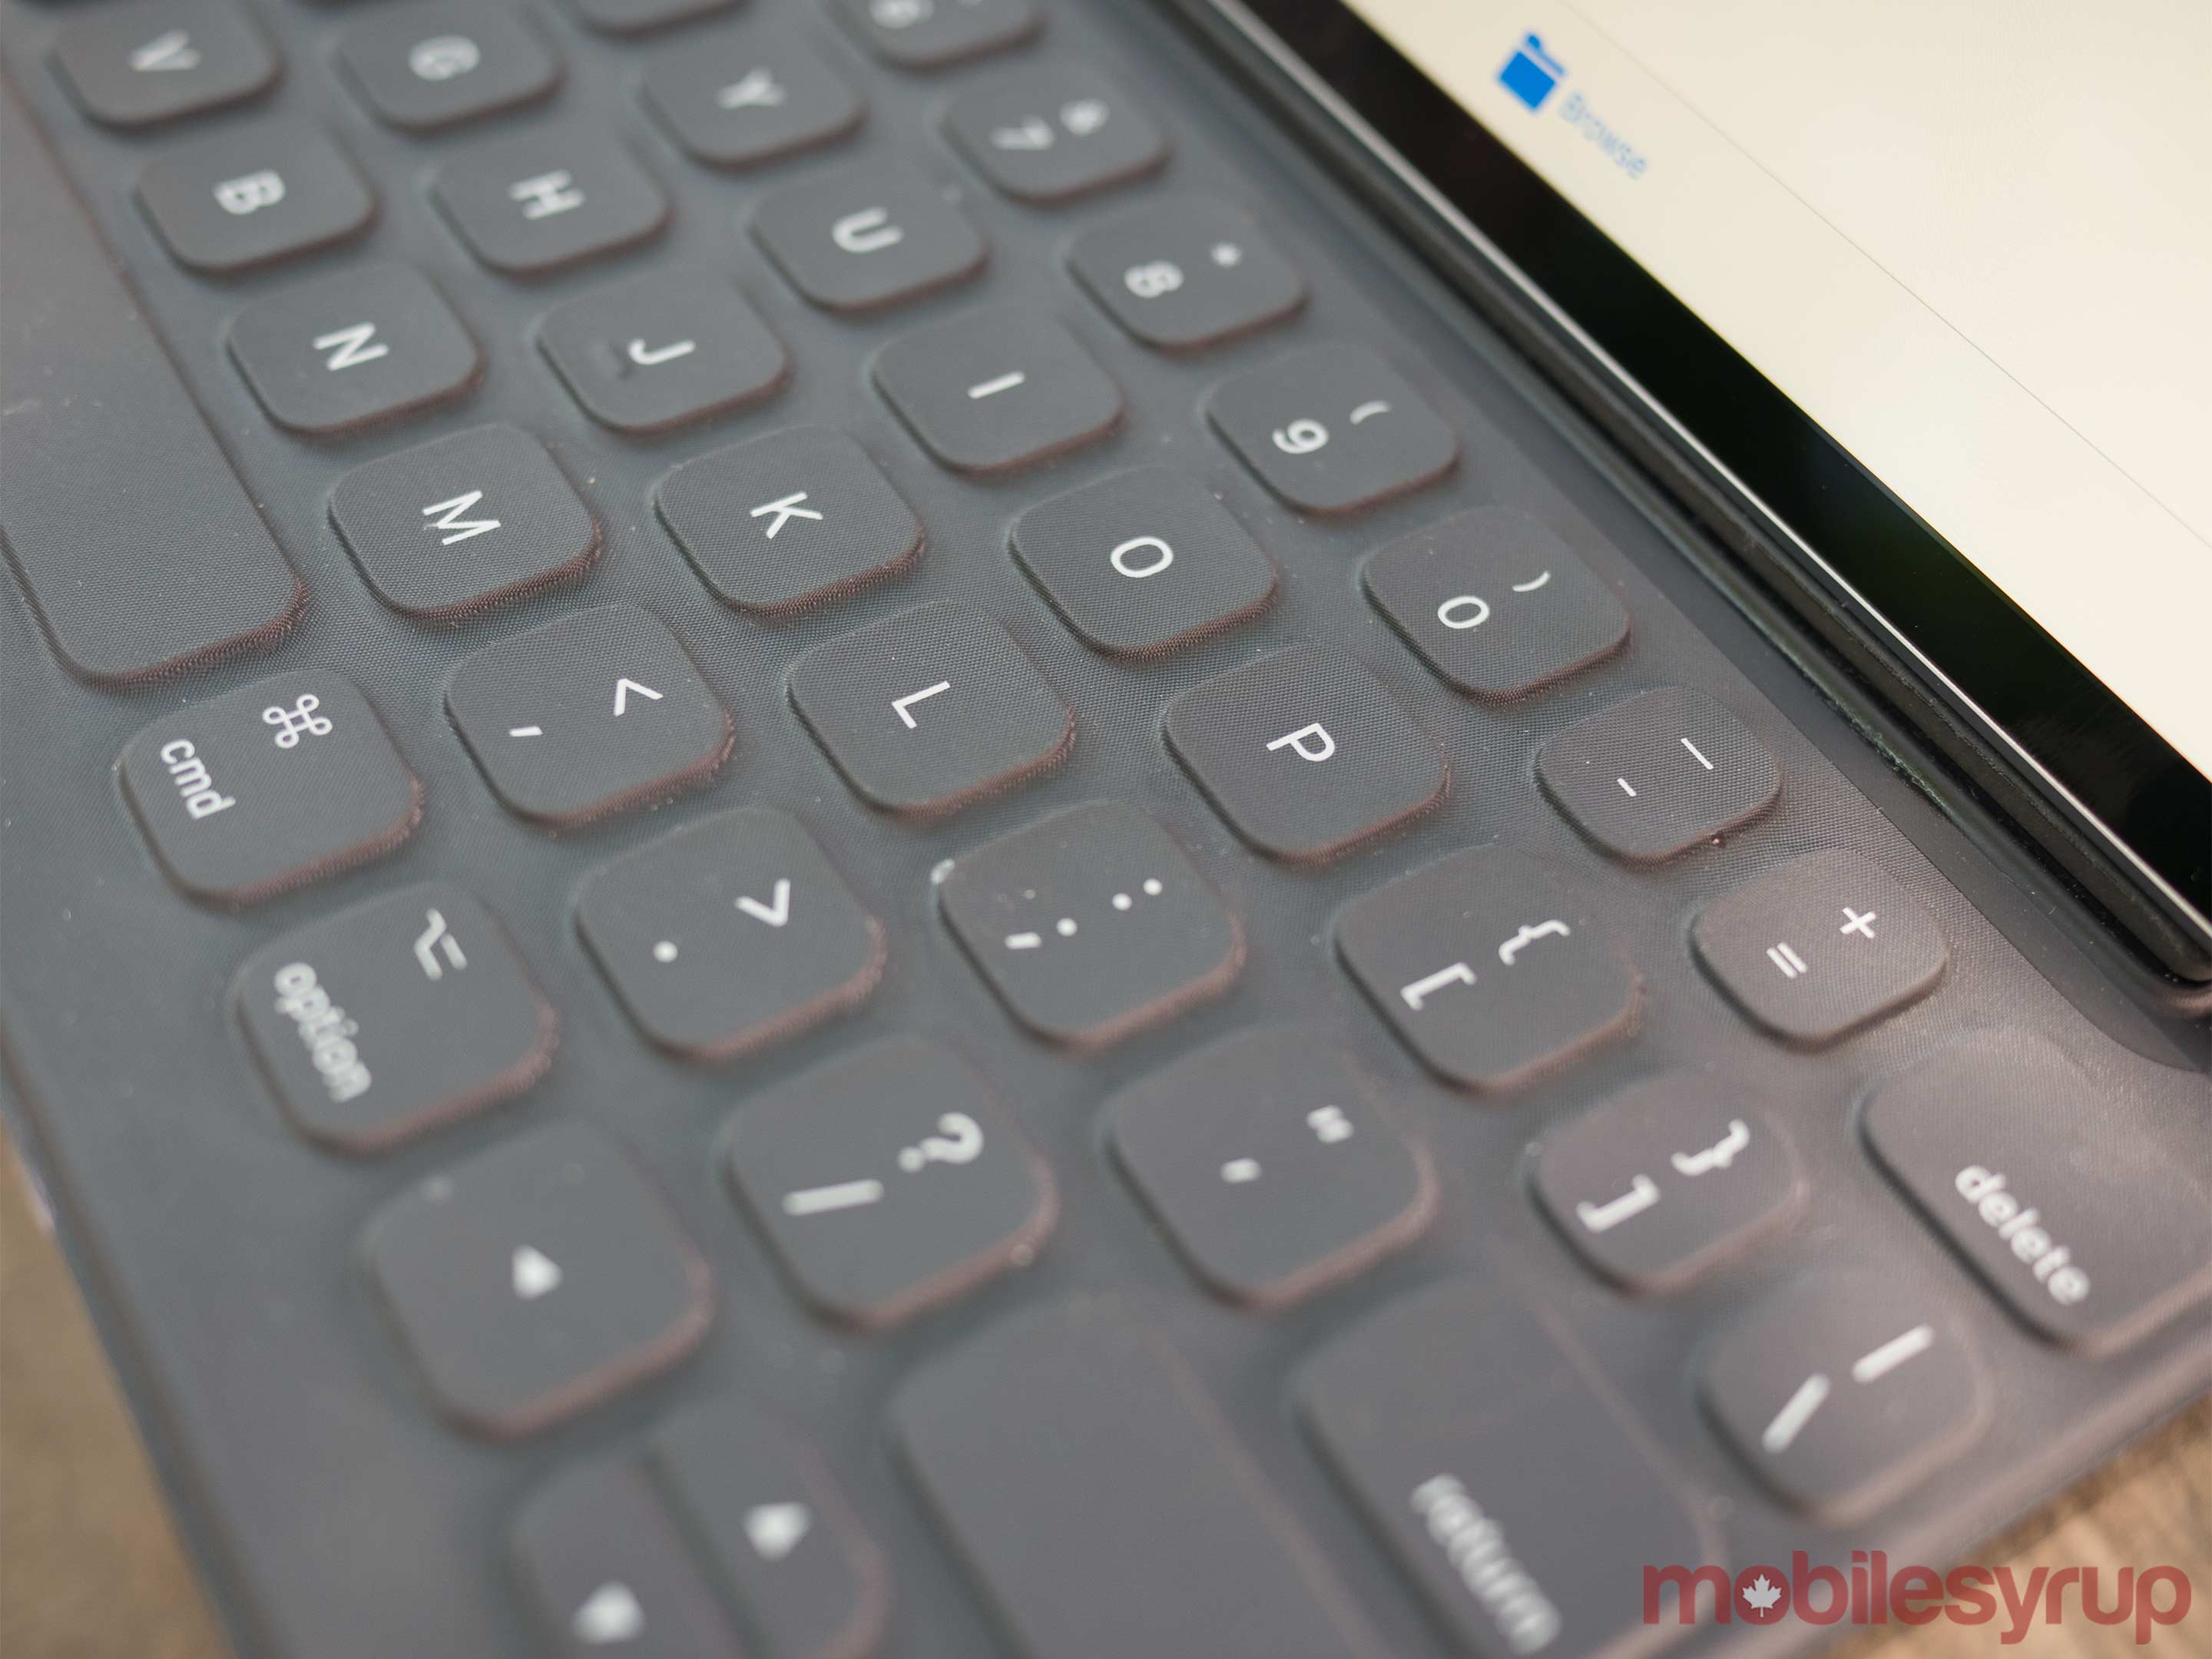 10.5-inch iPad Pro keyboard